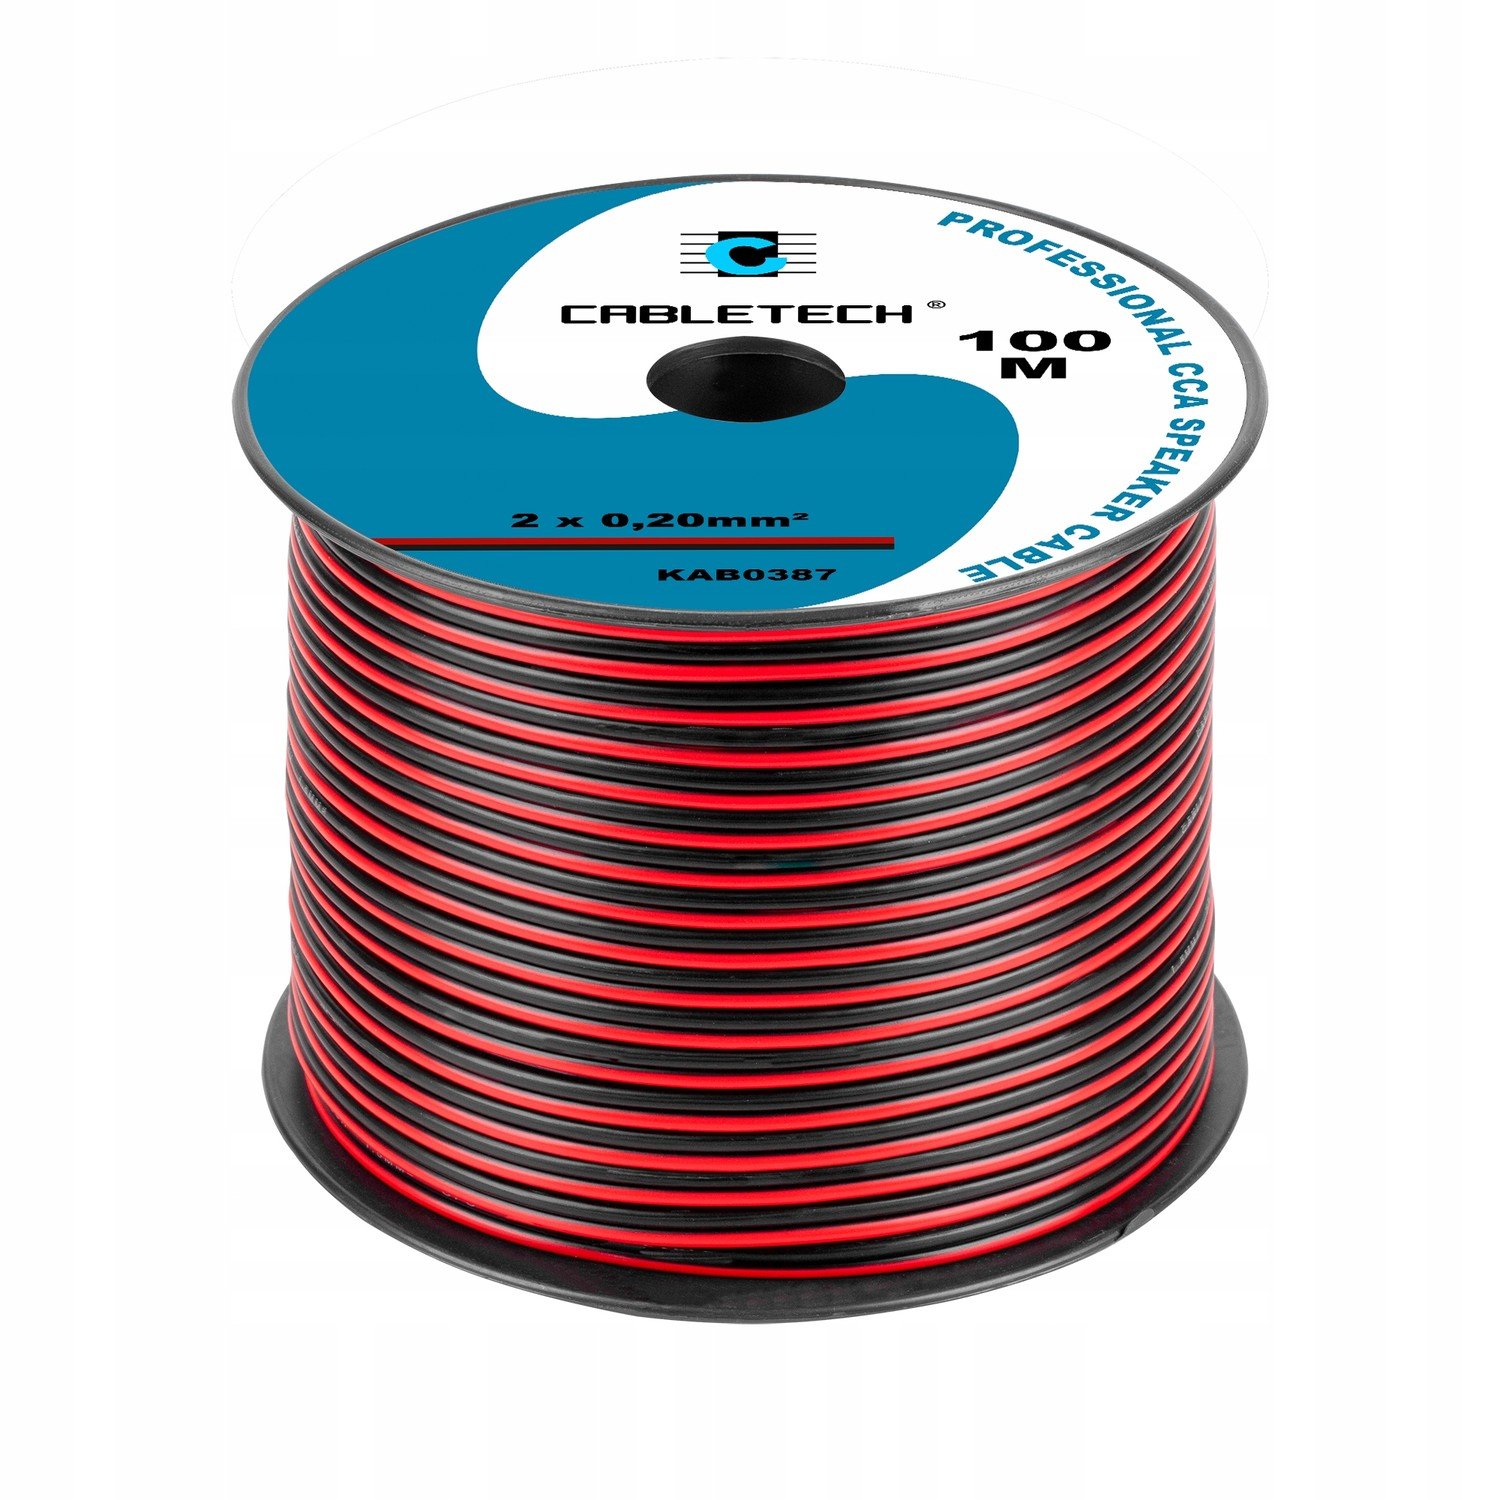 Reproduktorový kabel Cca 0.20mm černo-červený (1LL)